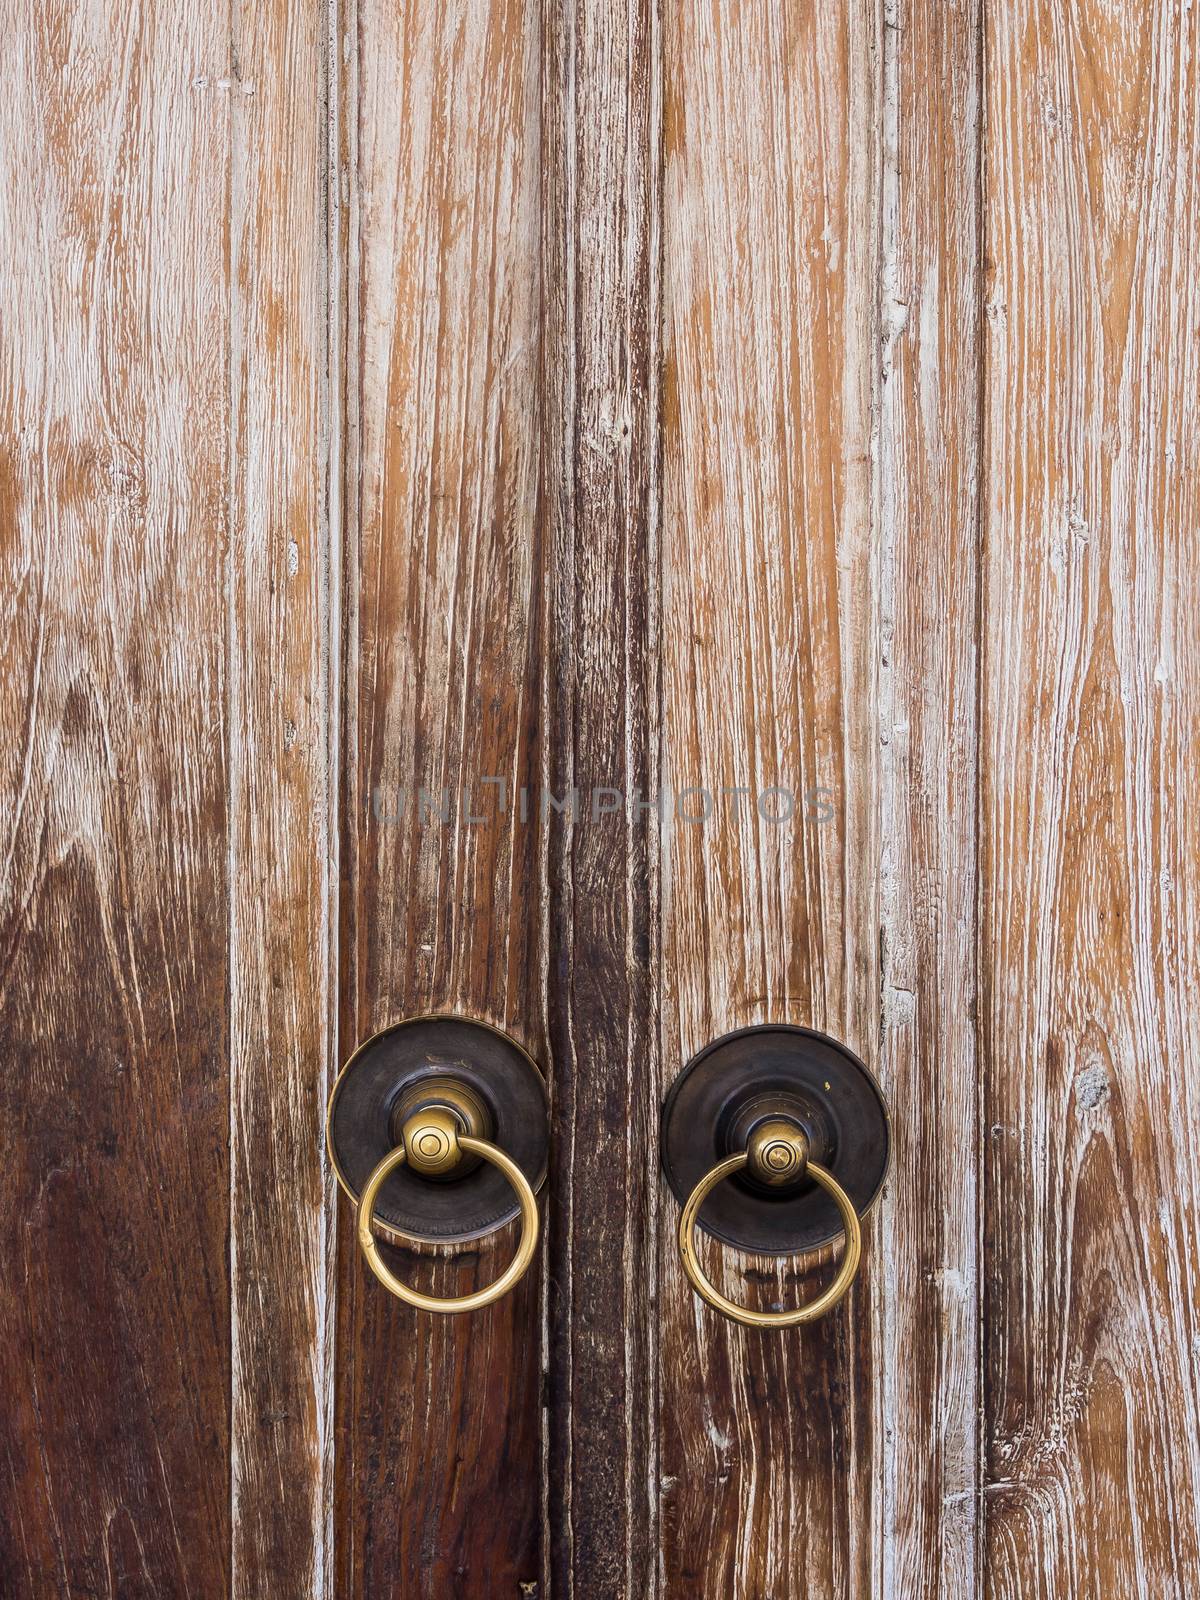 wooden door or gate and old vintage metal door ring handle knocker